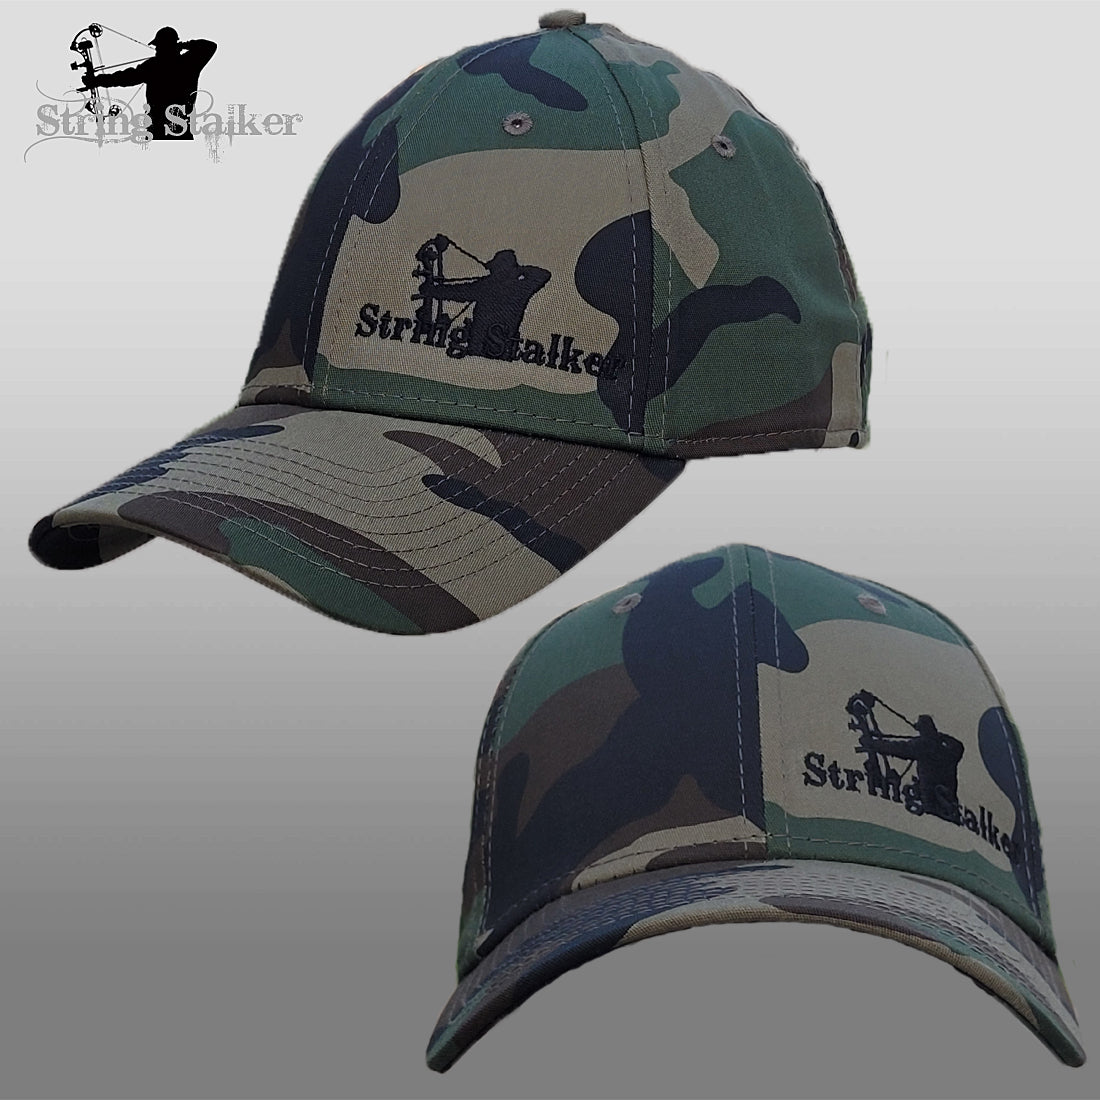 Bow Hunter Flex - – Fit Camo String Stalker Hat